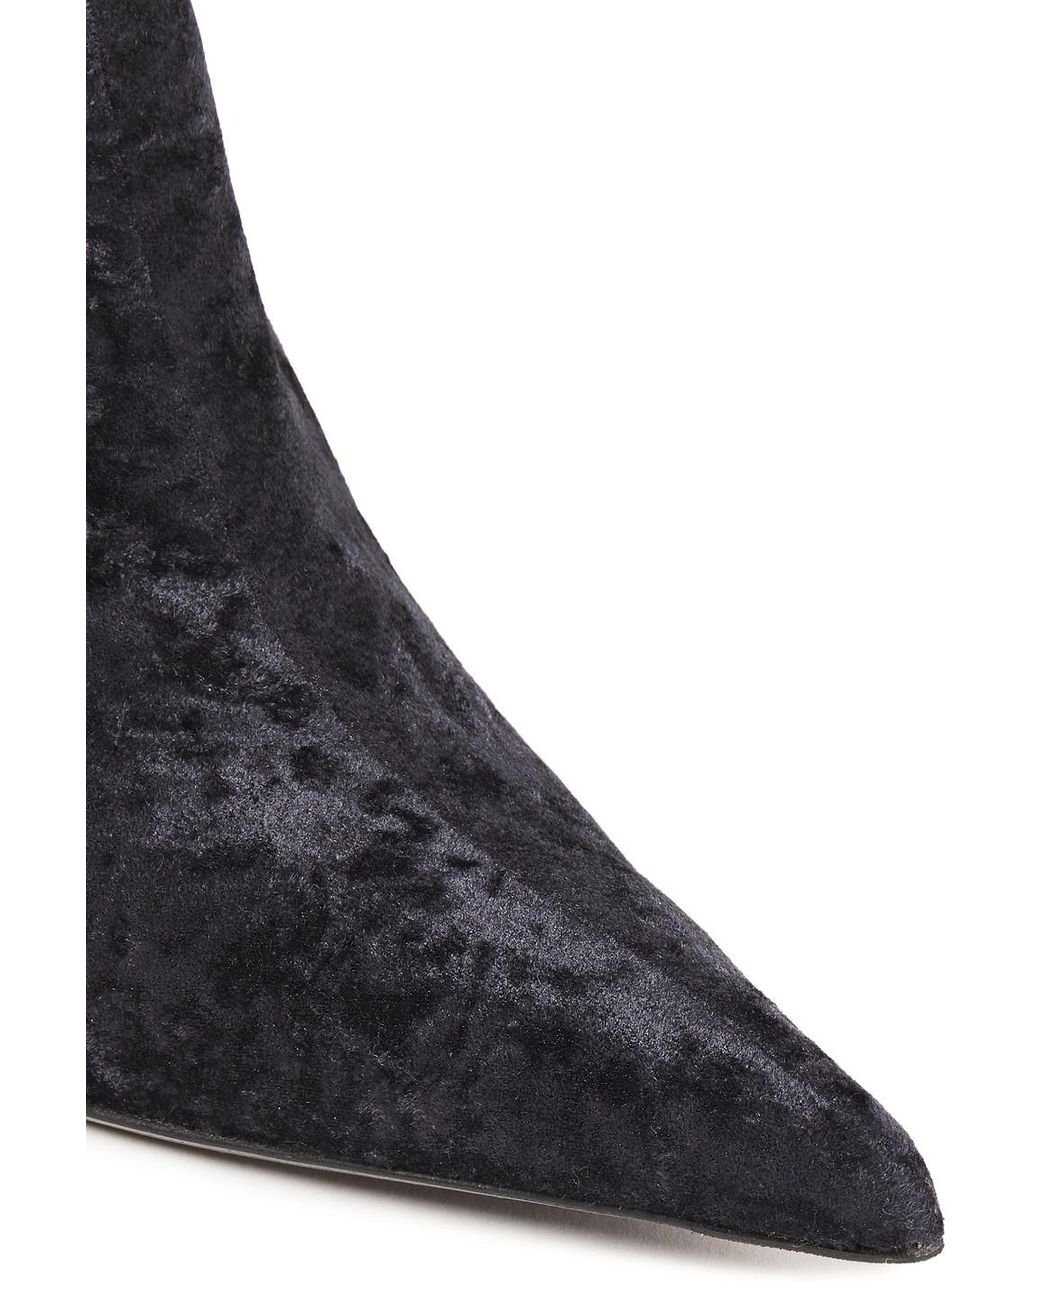 Knife Sock Boots in Black  Balenciaga  Mytheresa